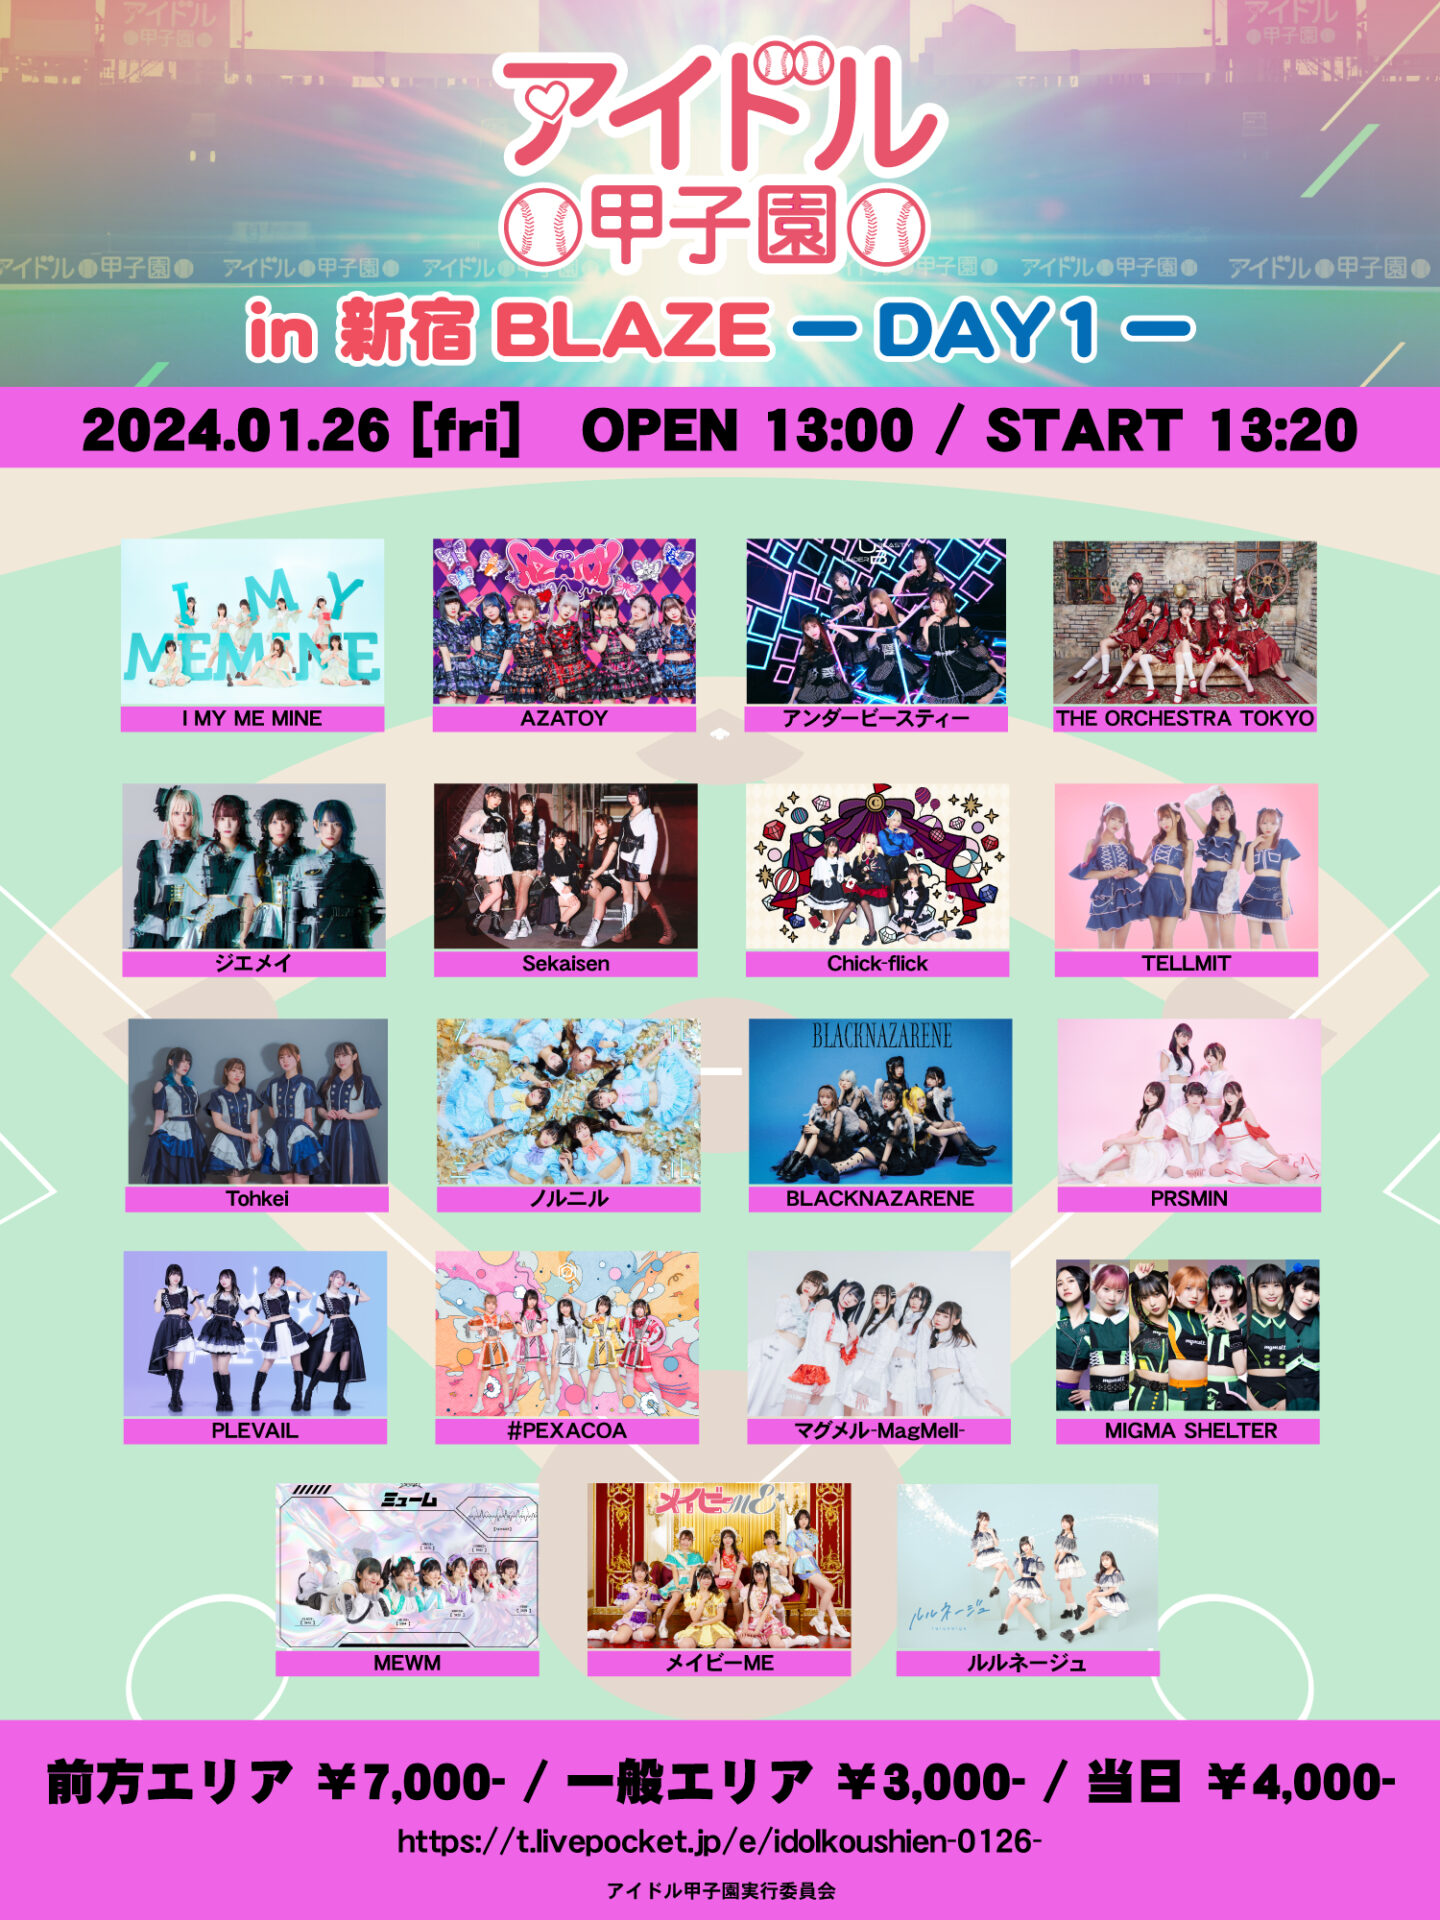 「アイドル甲子園 in 新宿BLAZE」-DAY1-